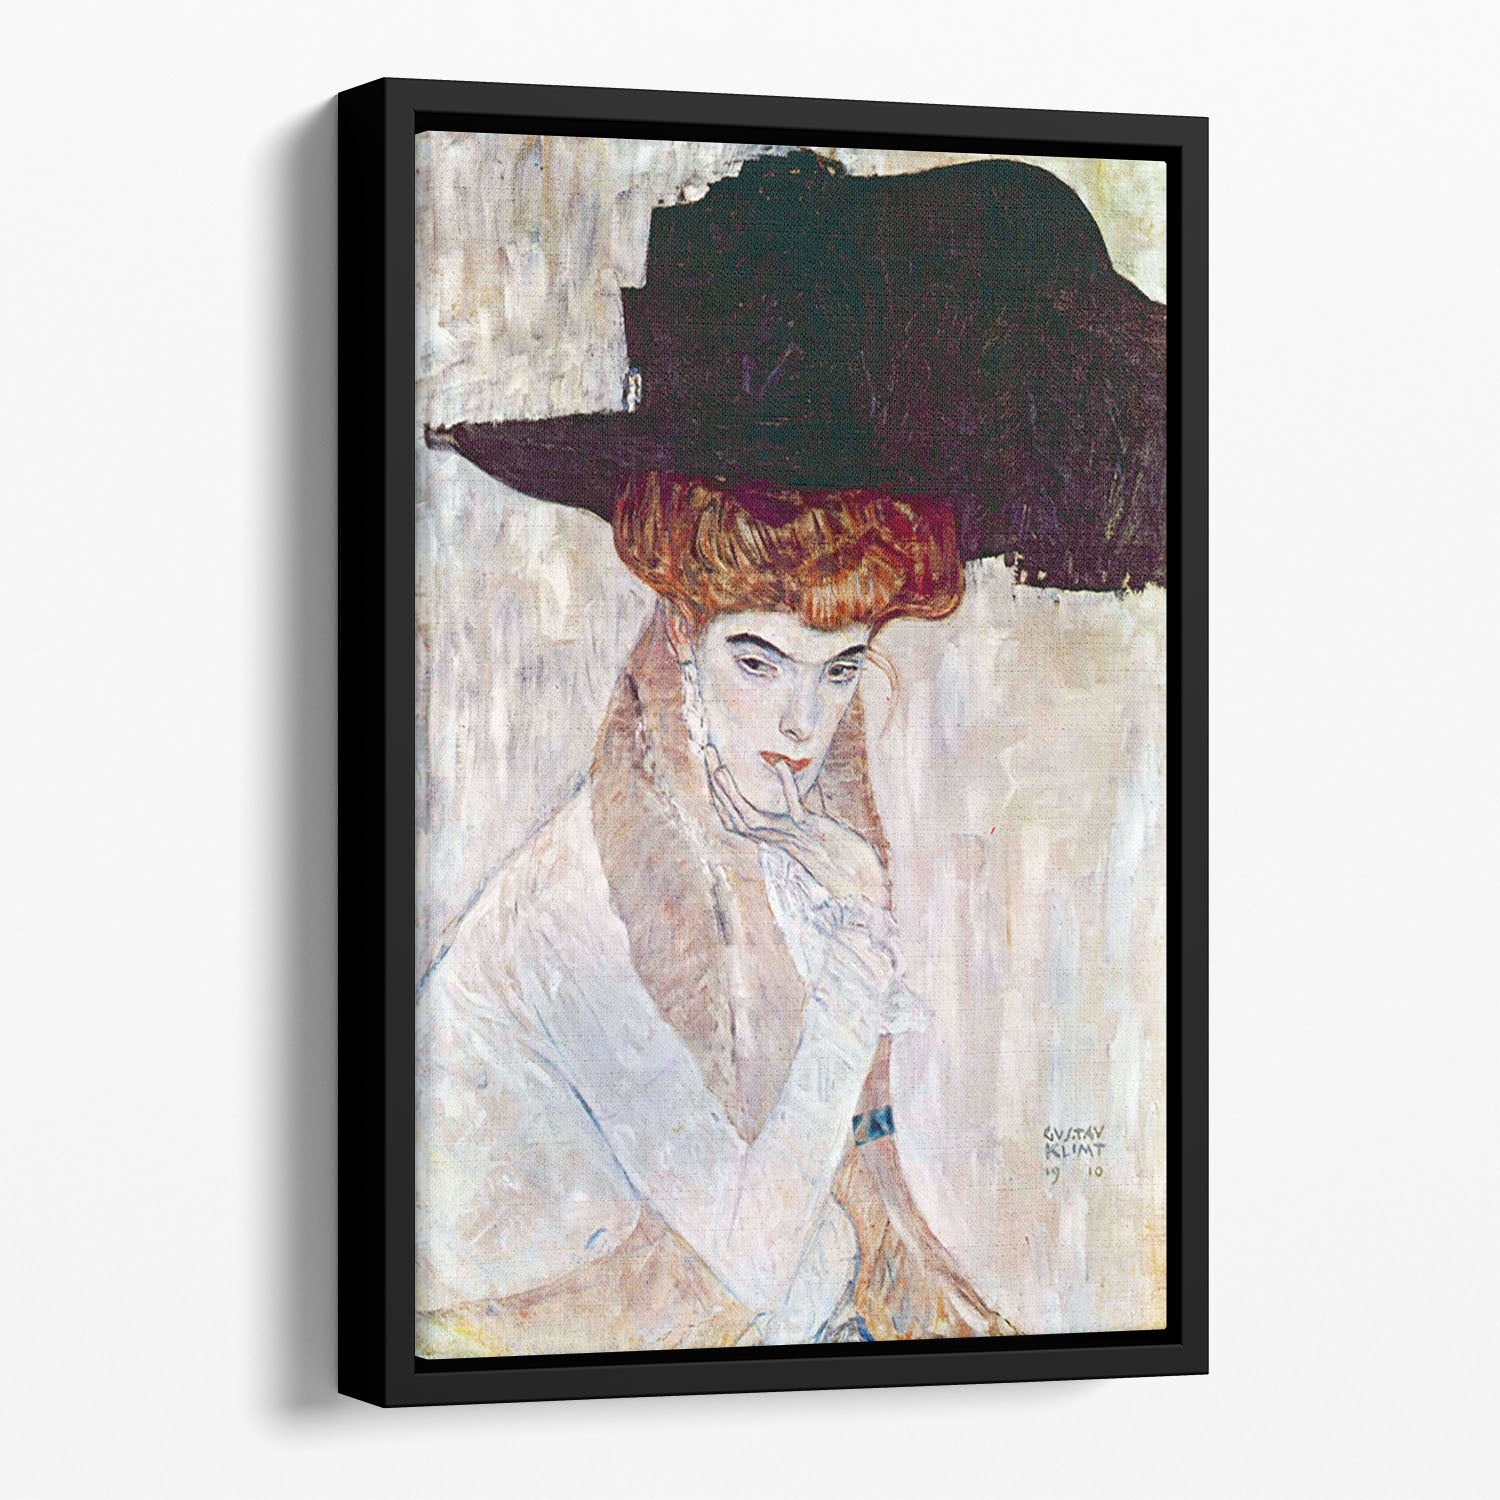 The Black Hat by Klimt Floating Framed Canvas